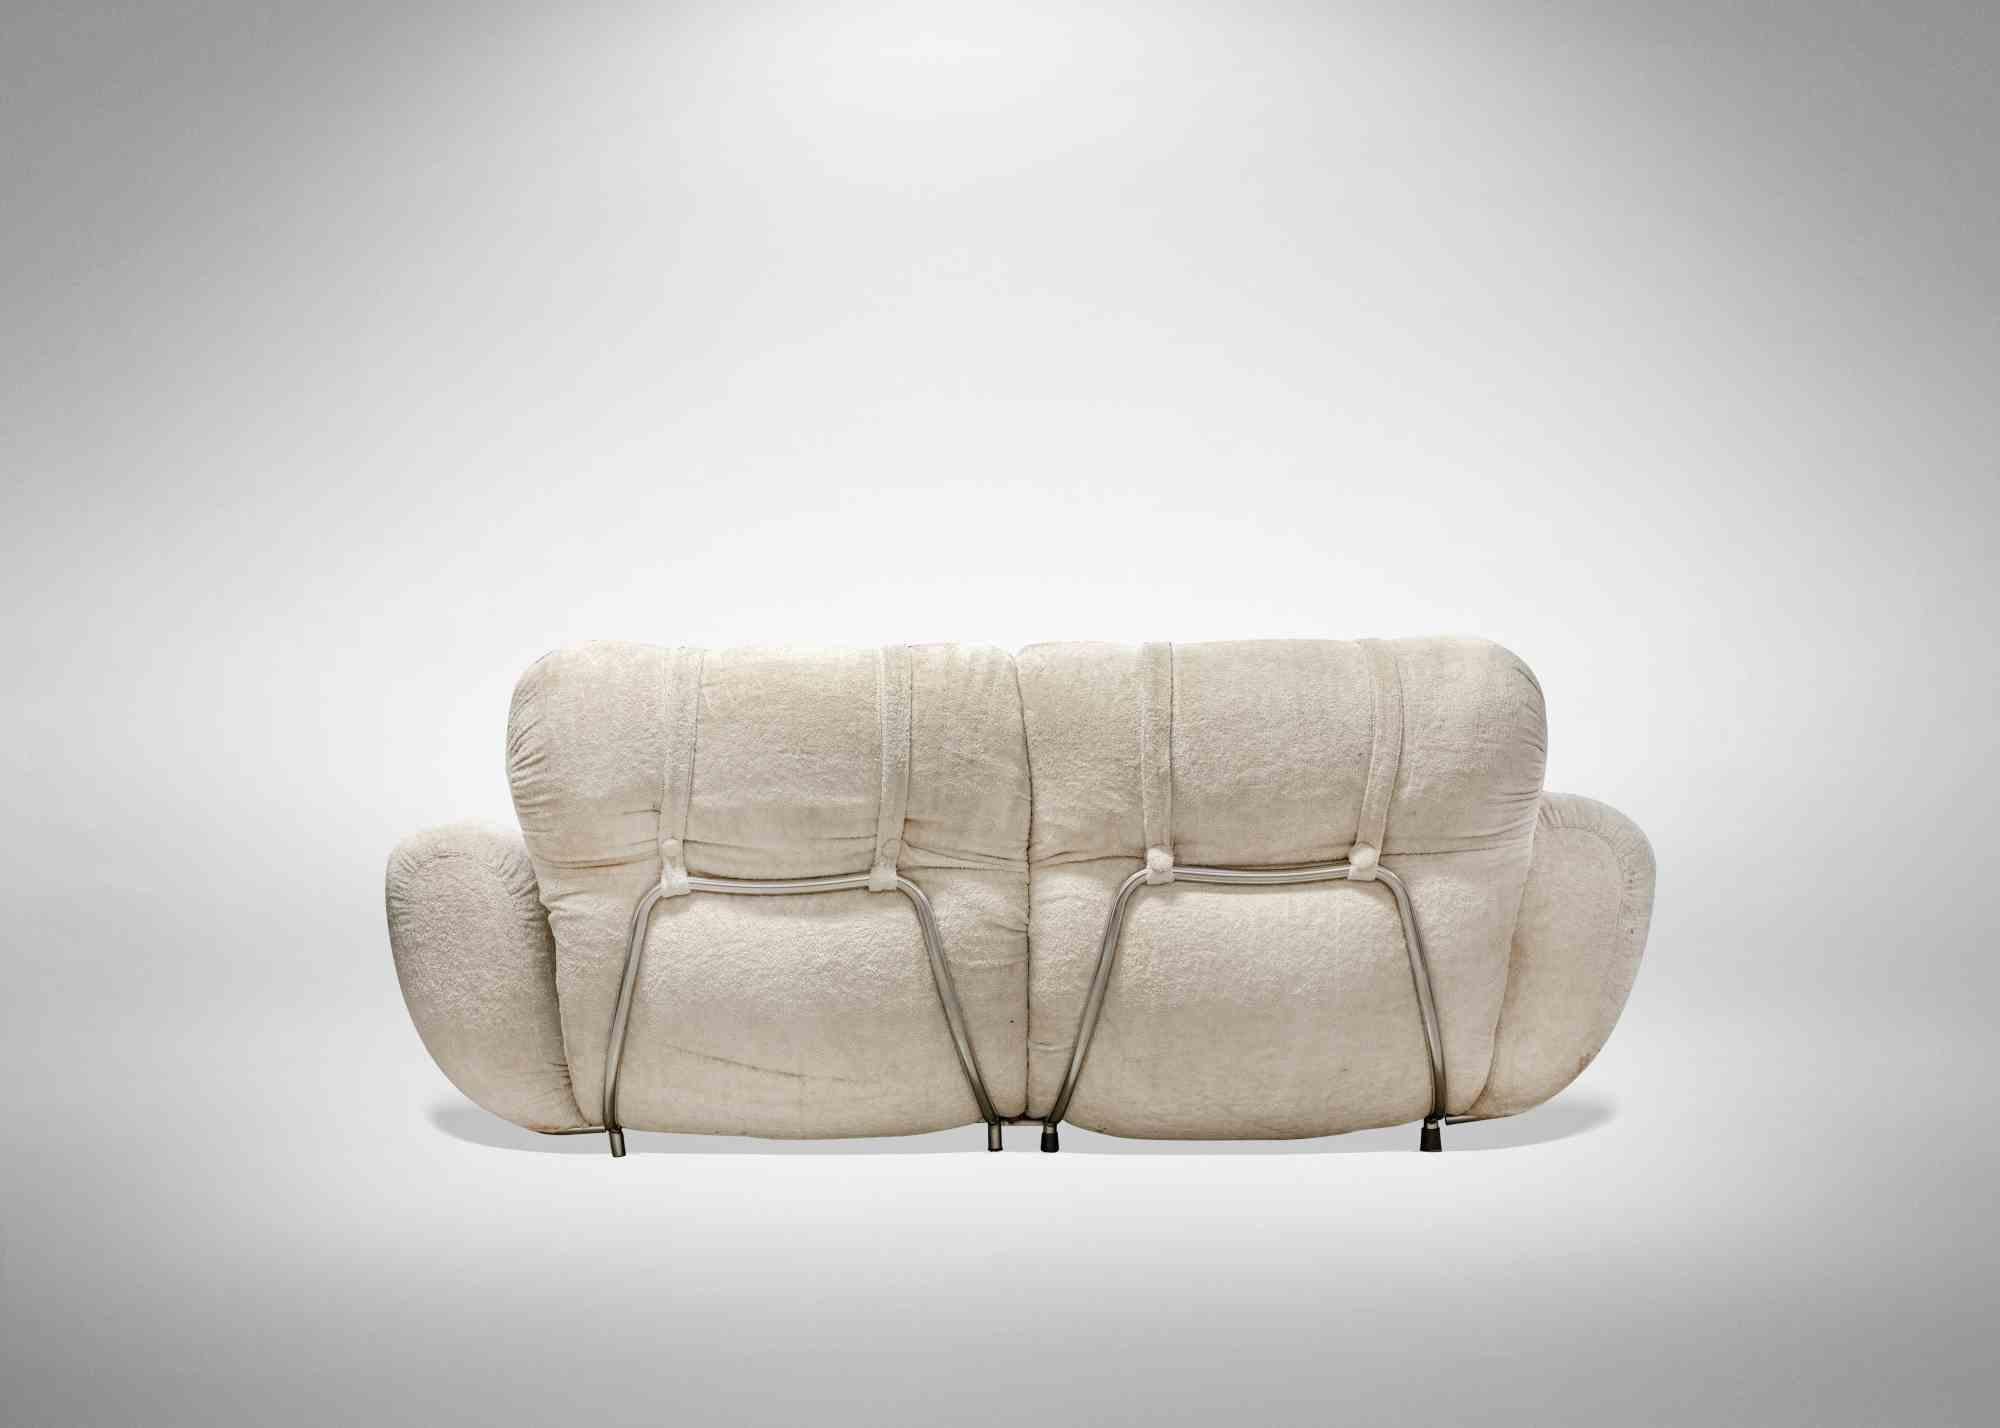 Ensemble canapé et fauteuils, conçu et réalisé dans les années 1970, dans le style d'Adriano Piazzesi. Il est fabriqué en métal et en tissu. 

Très bon état.

Fauteuil, hauteur 90 cm, longueur 92 cm, profondeur

Coach, hauteur 90 cm, longueur